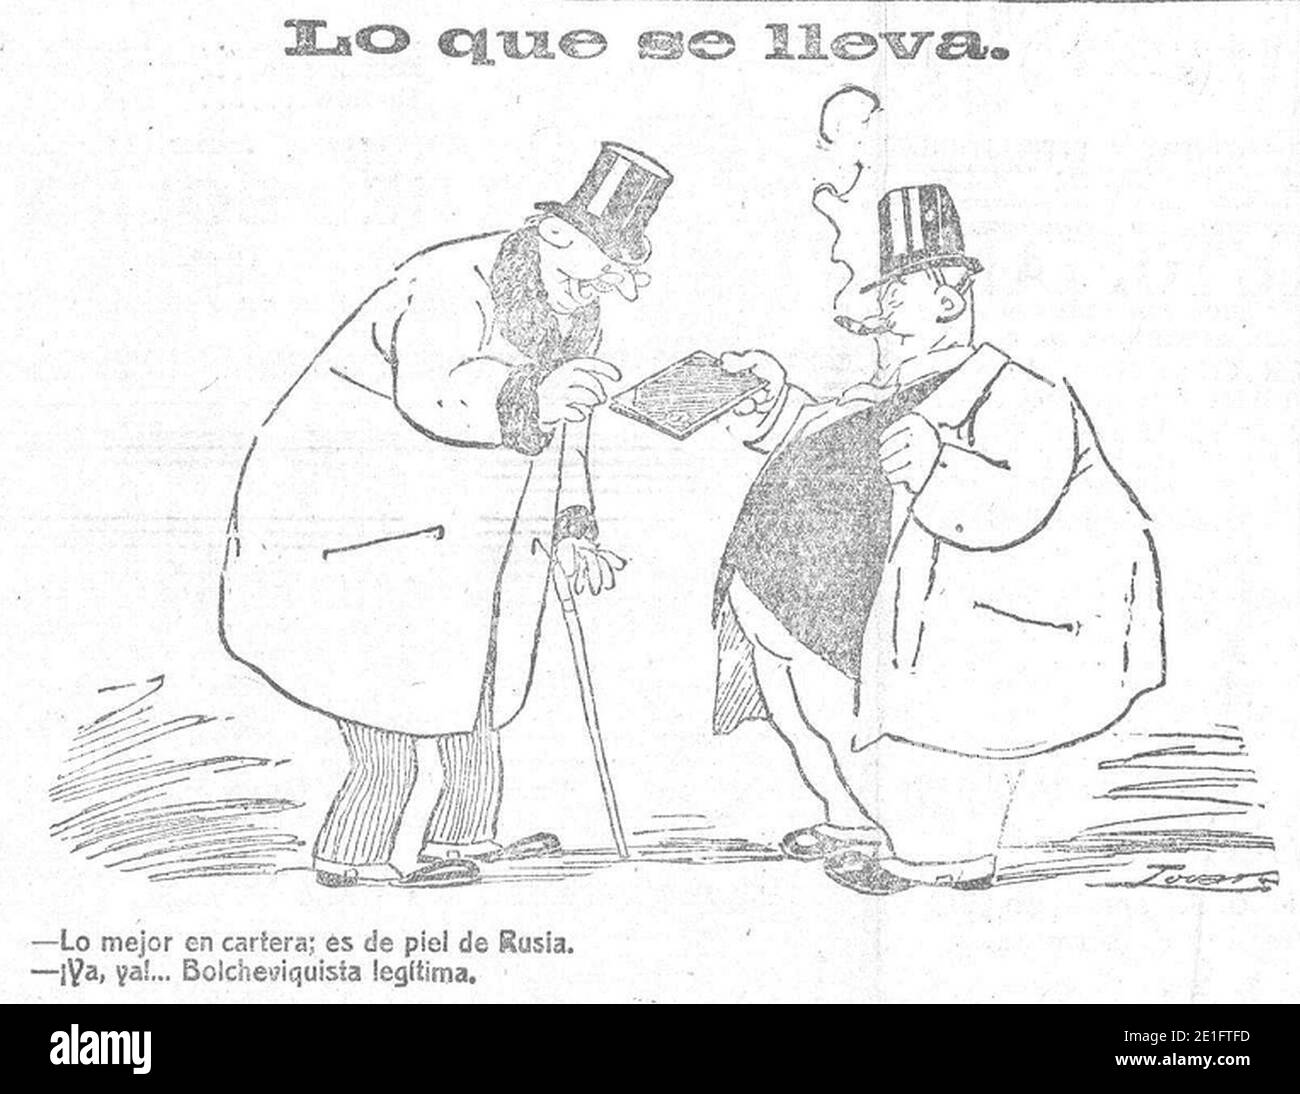 Lo que se lleva, de Tovar, Heraldo de Madrid, 6 de enero de 1919. Stockfoto